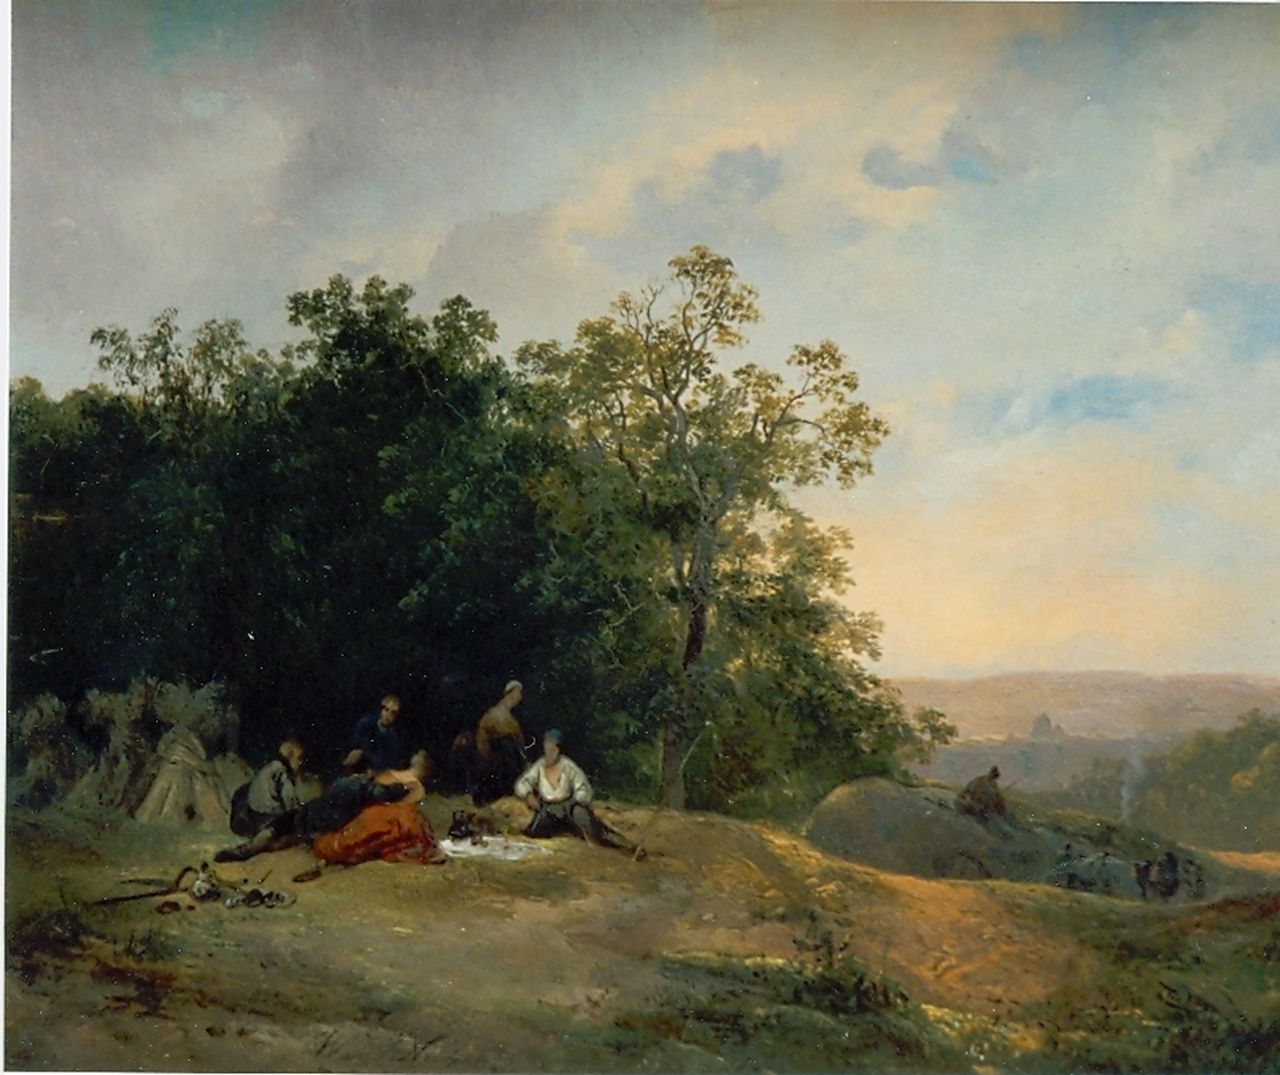 Nuijen W.J.J.  | Wijnandus Johannes Josephus 'Wijnand' Nuijen, Travellers resting, oil on panel